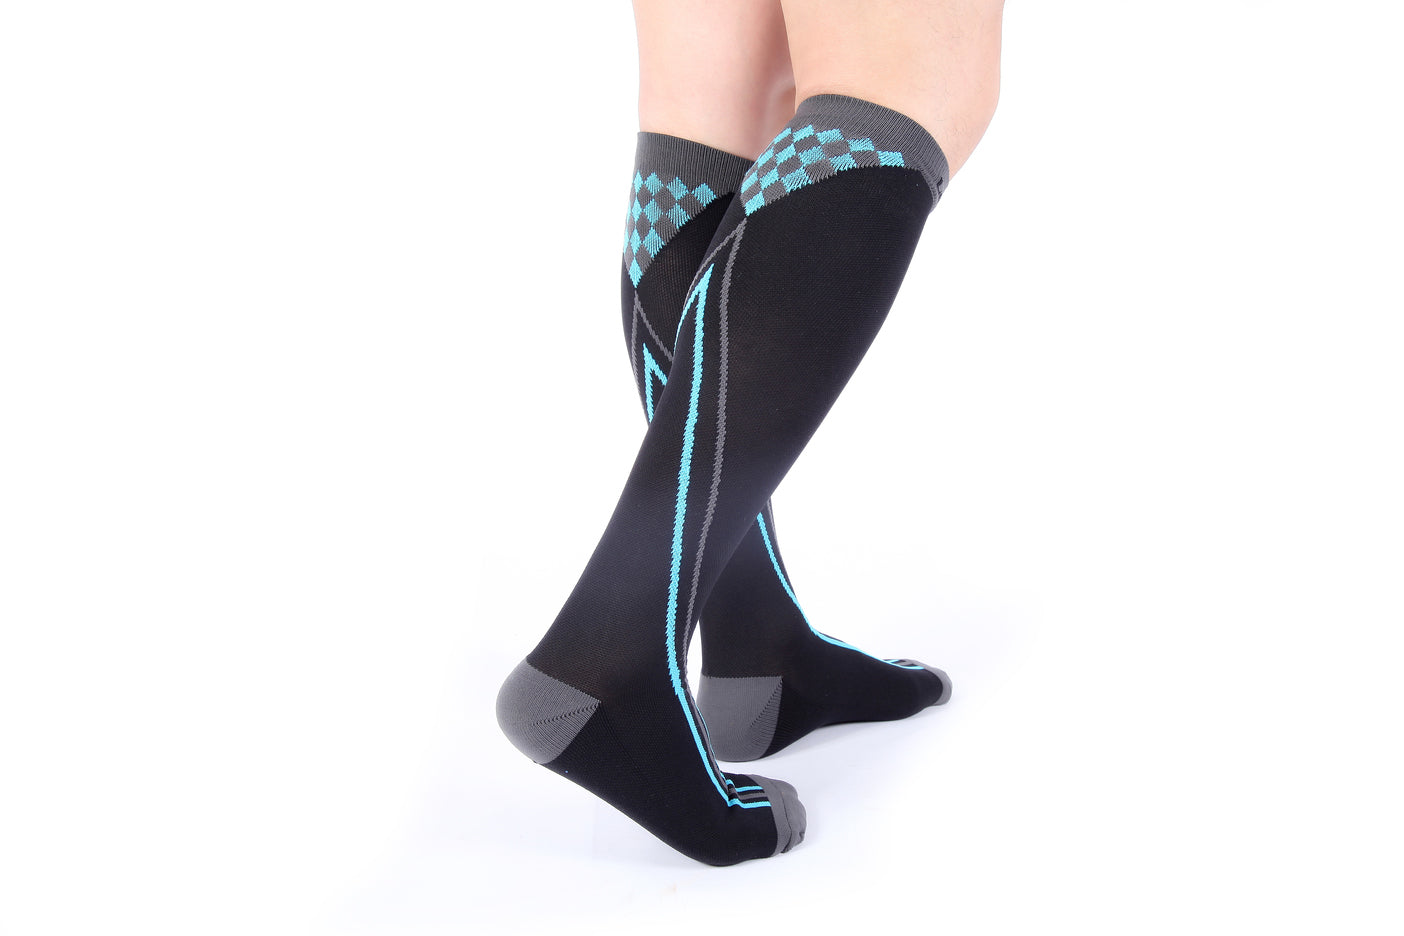 Closed Toe Compression Socks | Medical Compression Socks - Doc Miller